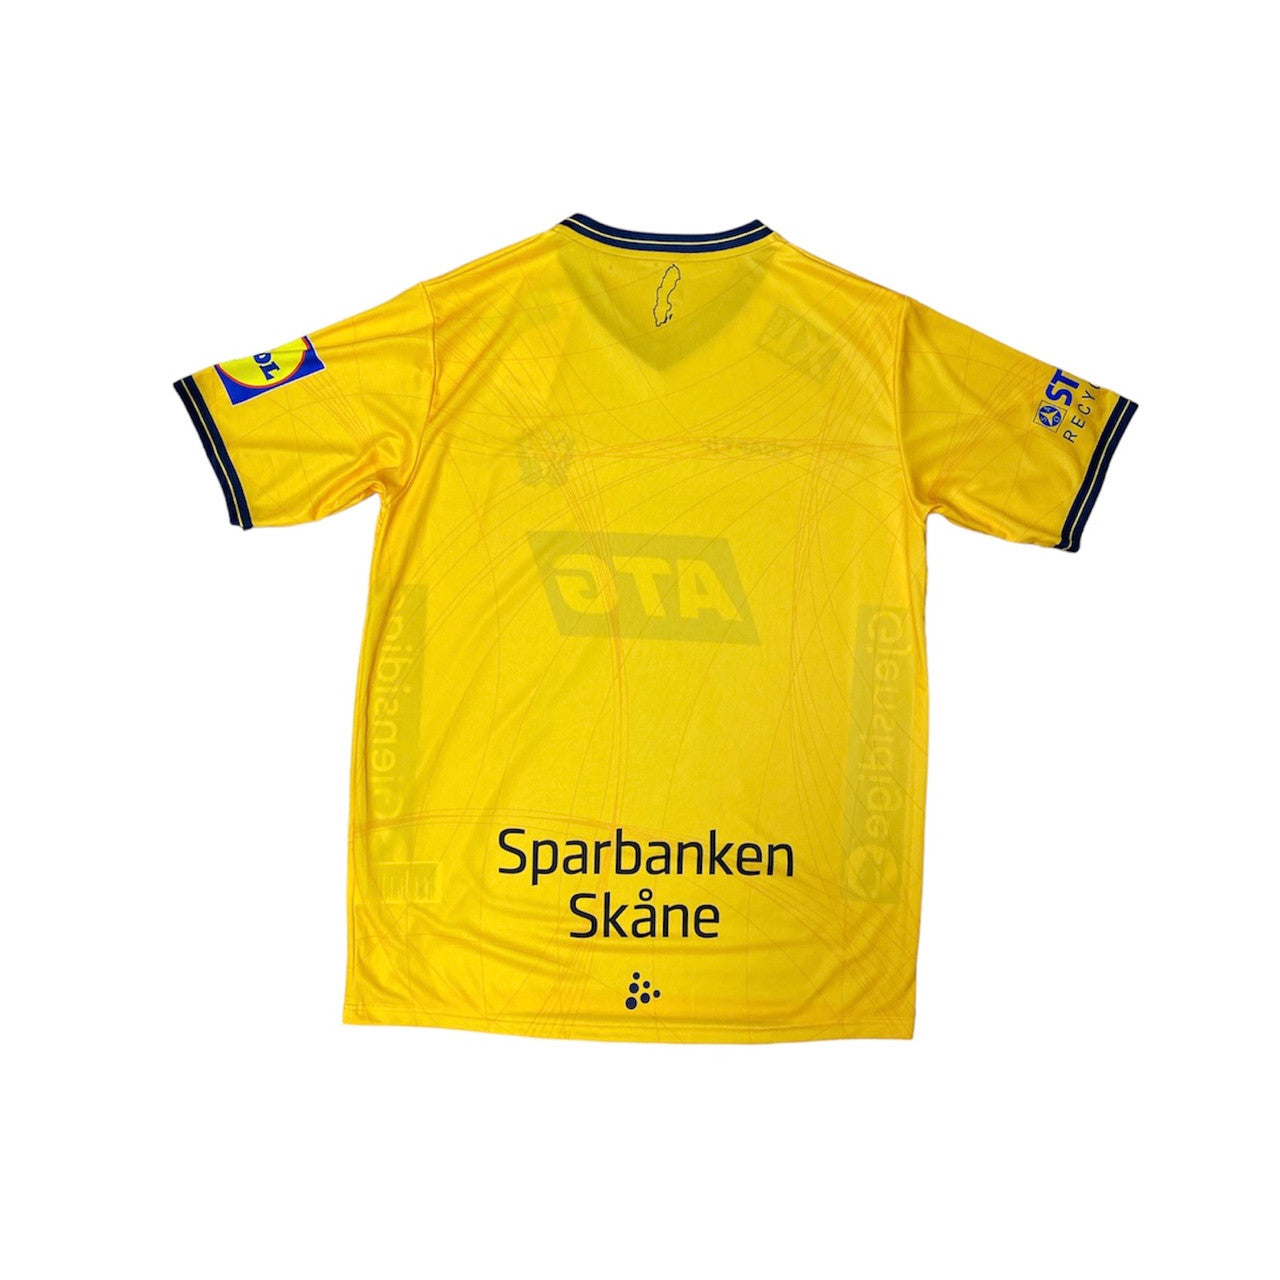 Sweden National Team Handball Jersey